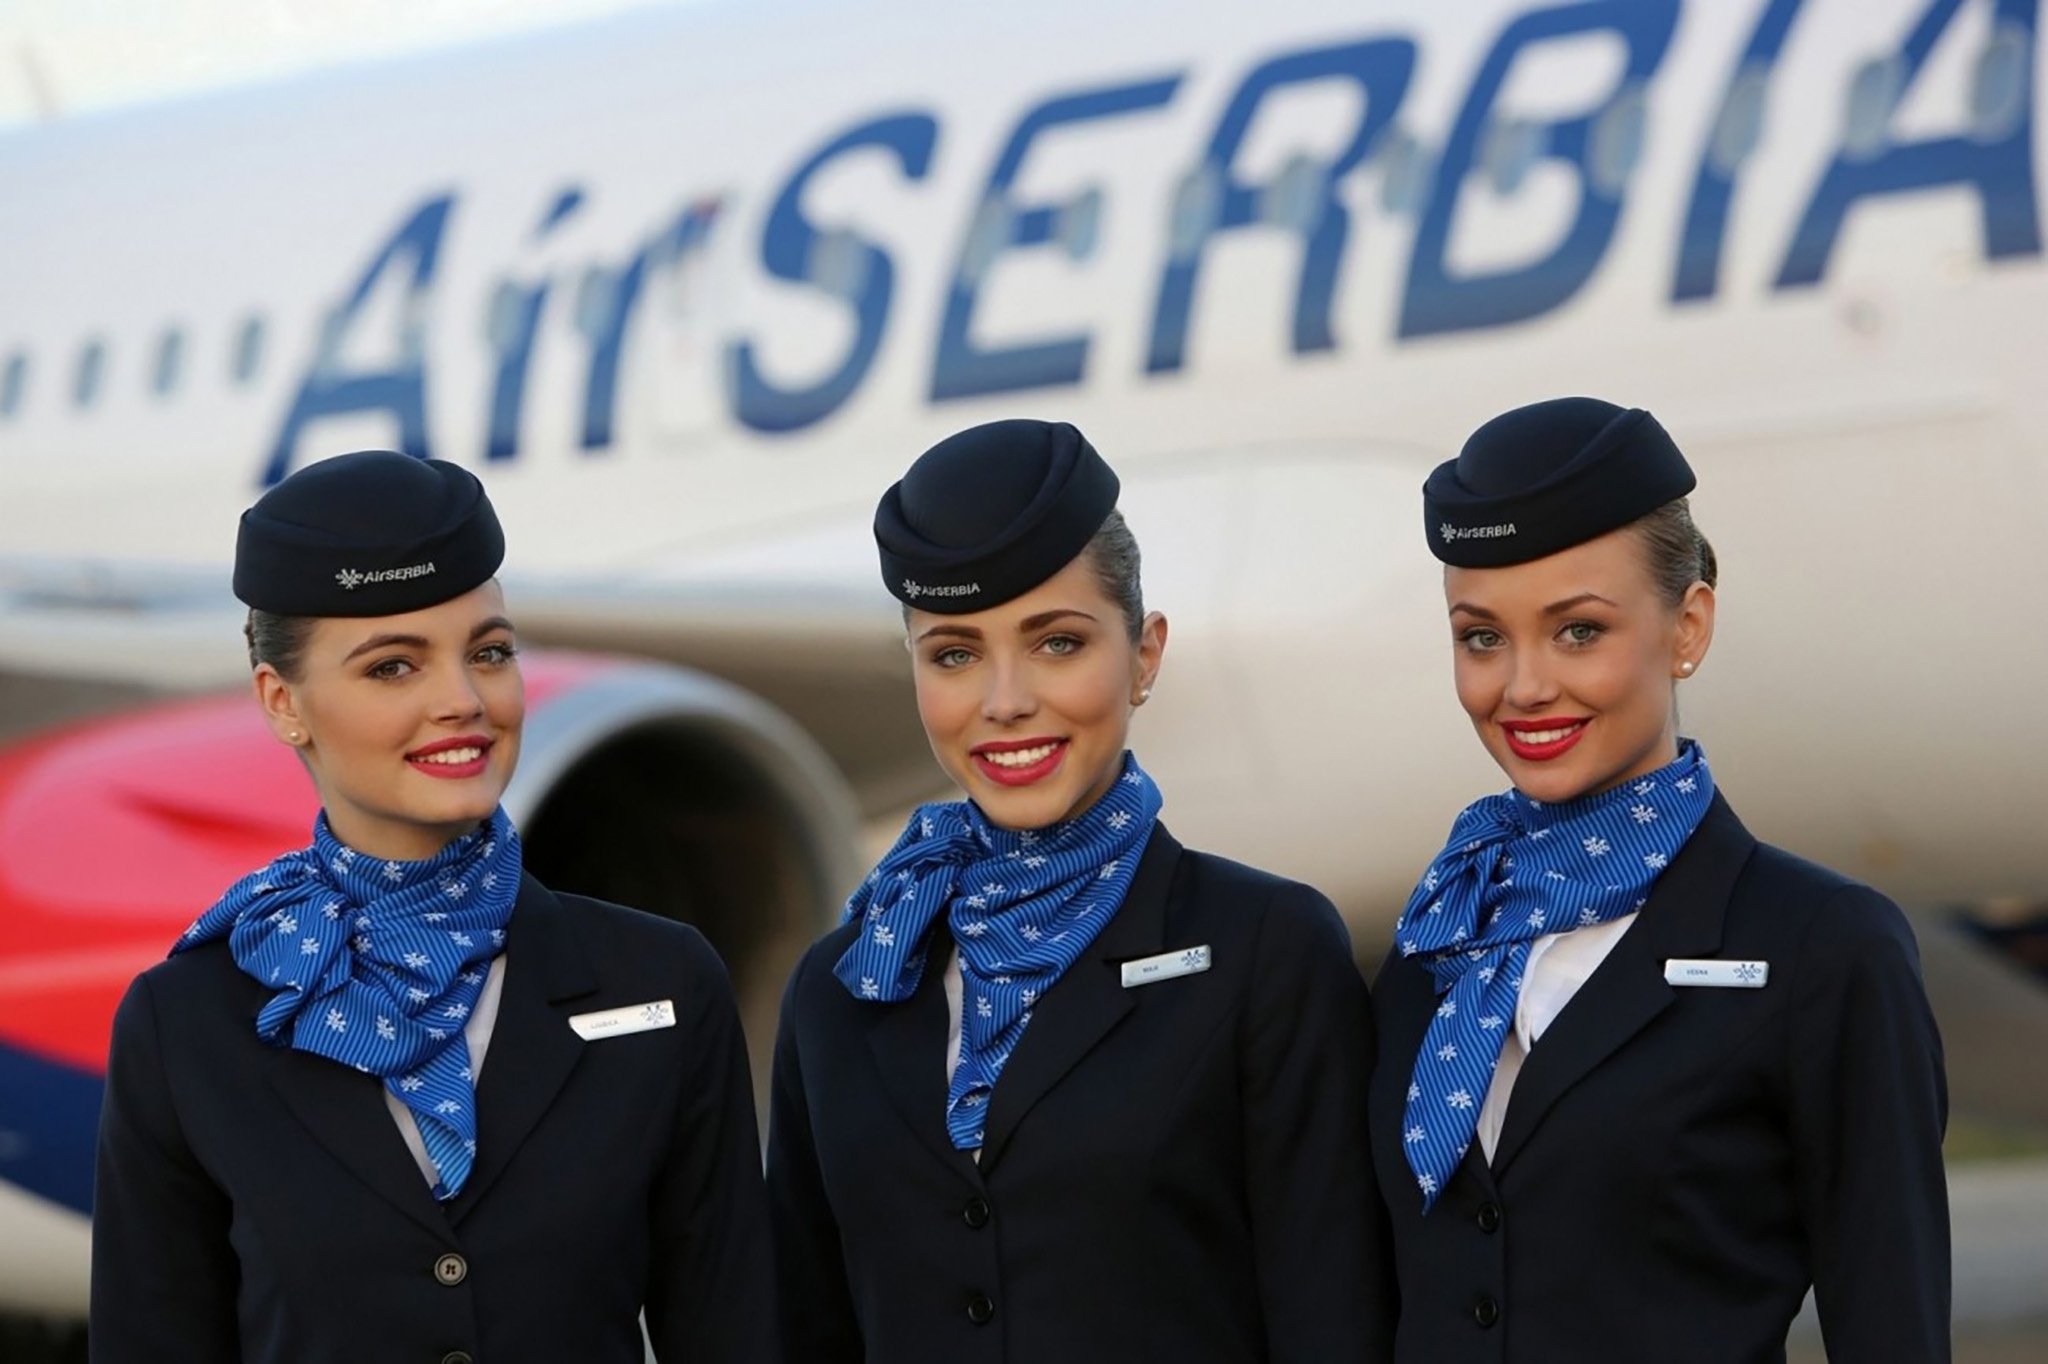 Đang tải Air Serbia.jpg…